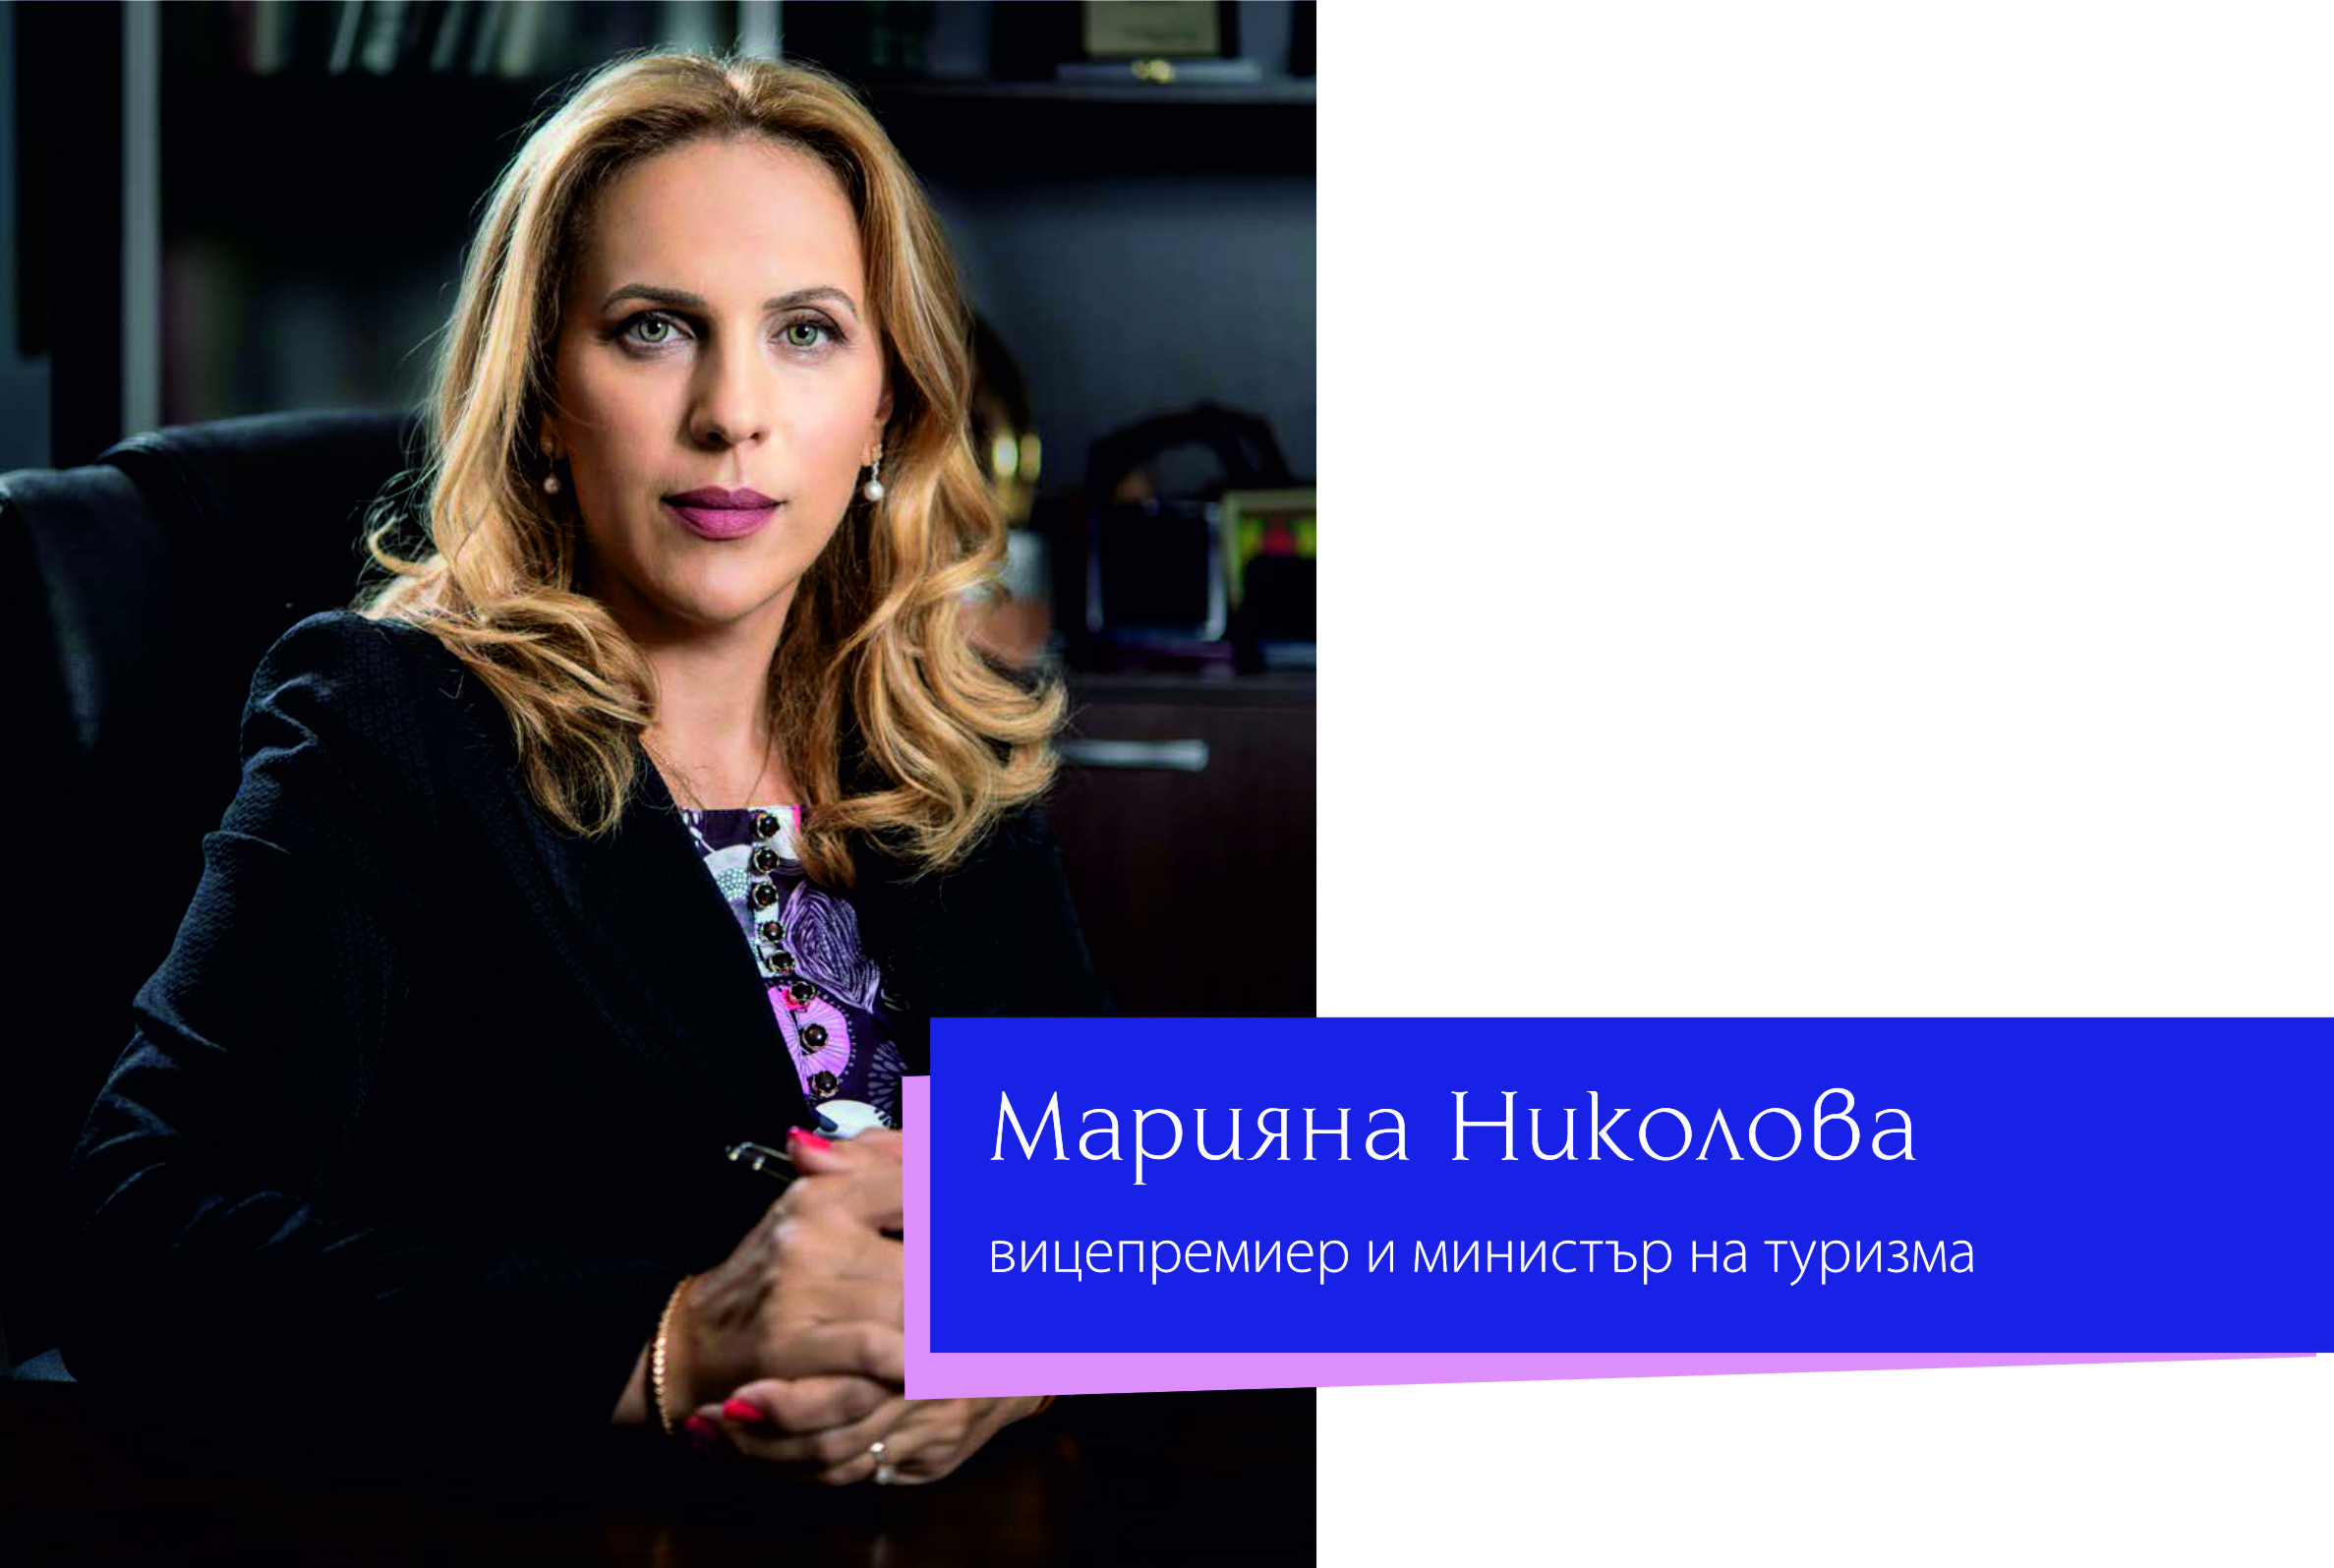 Марияна Николова, вицепремиер и министър на туризма: Общо 54 мерки в помощ на фирмите и хората бяха одобрени от Националния съвет за тристранно сътрудничество